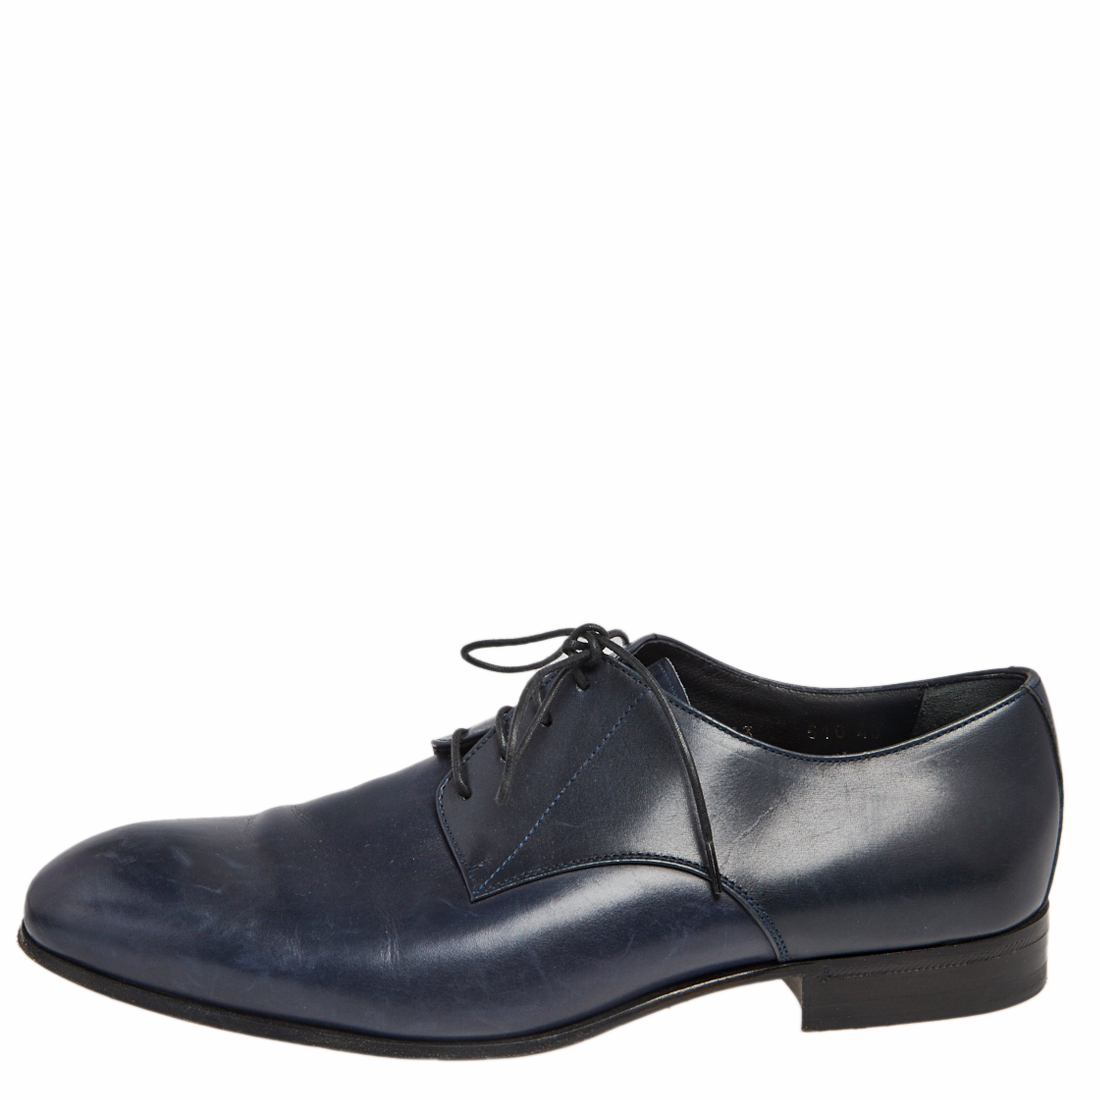 Giorgio Armani Blue Leather Oxford Shoes Size 40